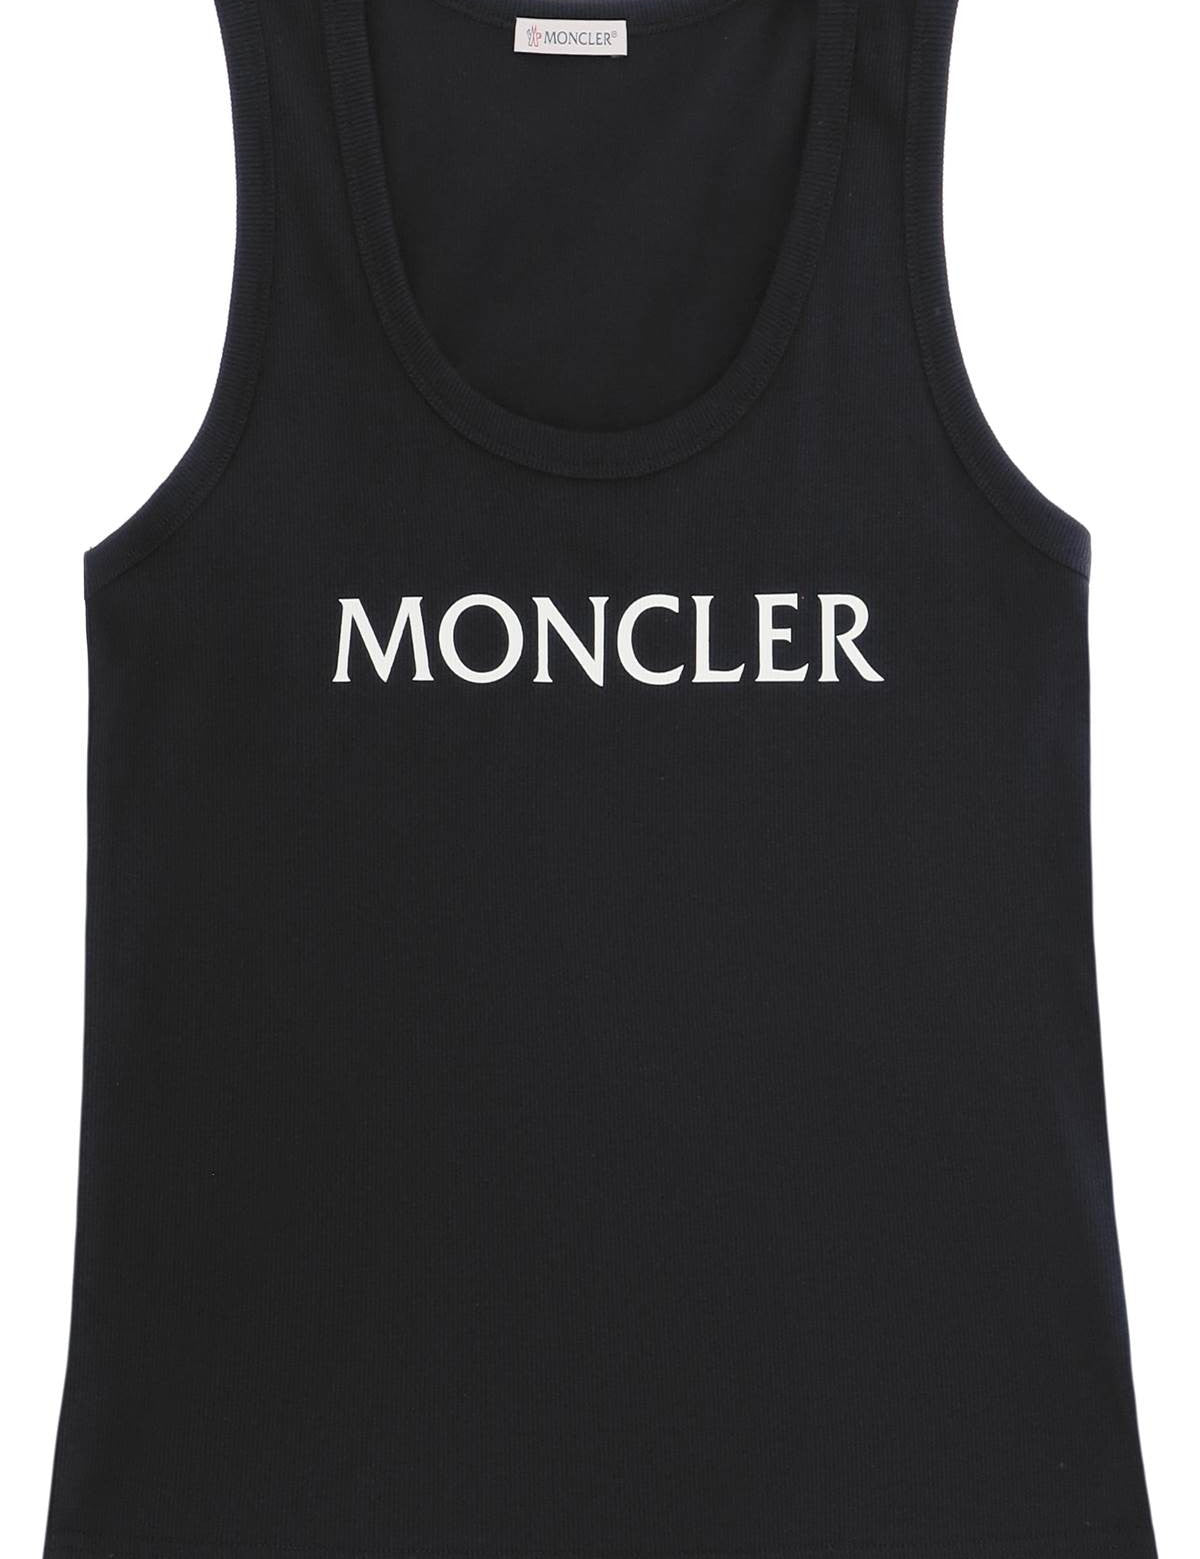 moncler-basic-logo-print-tank-top.jpg